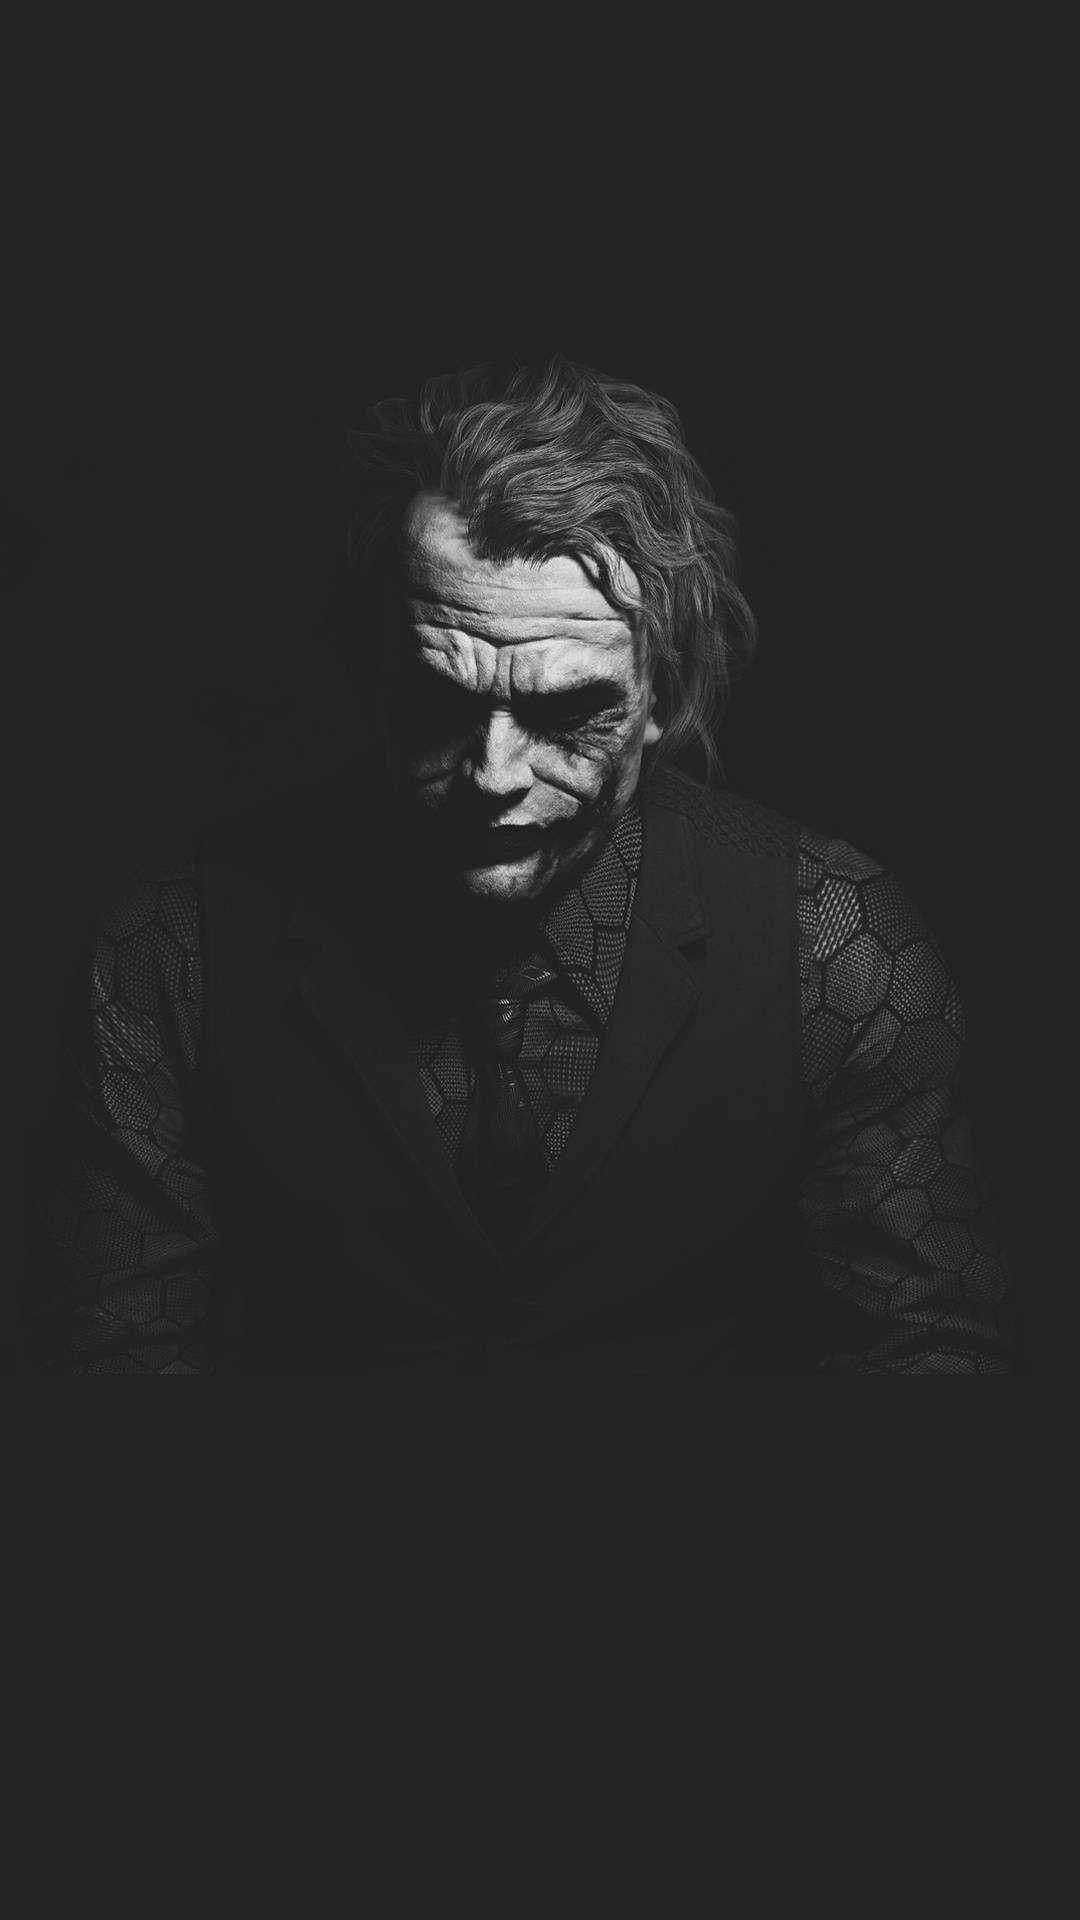 Why so serious. Joker wallpaper, Joker pics, Joker image